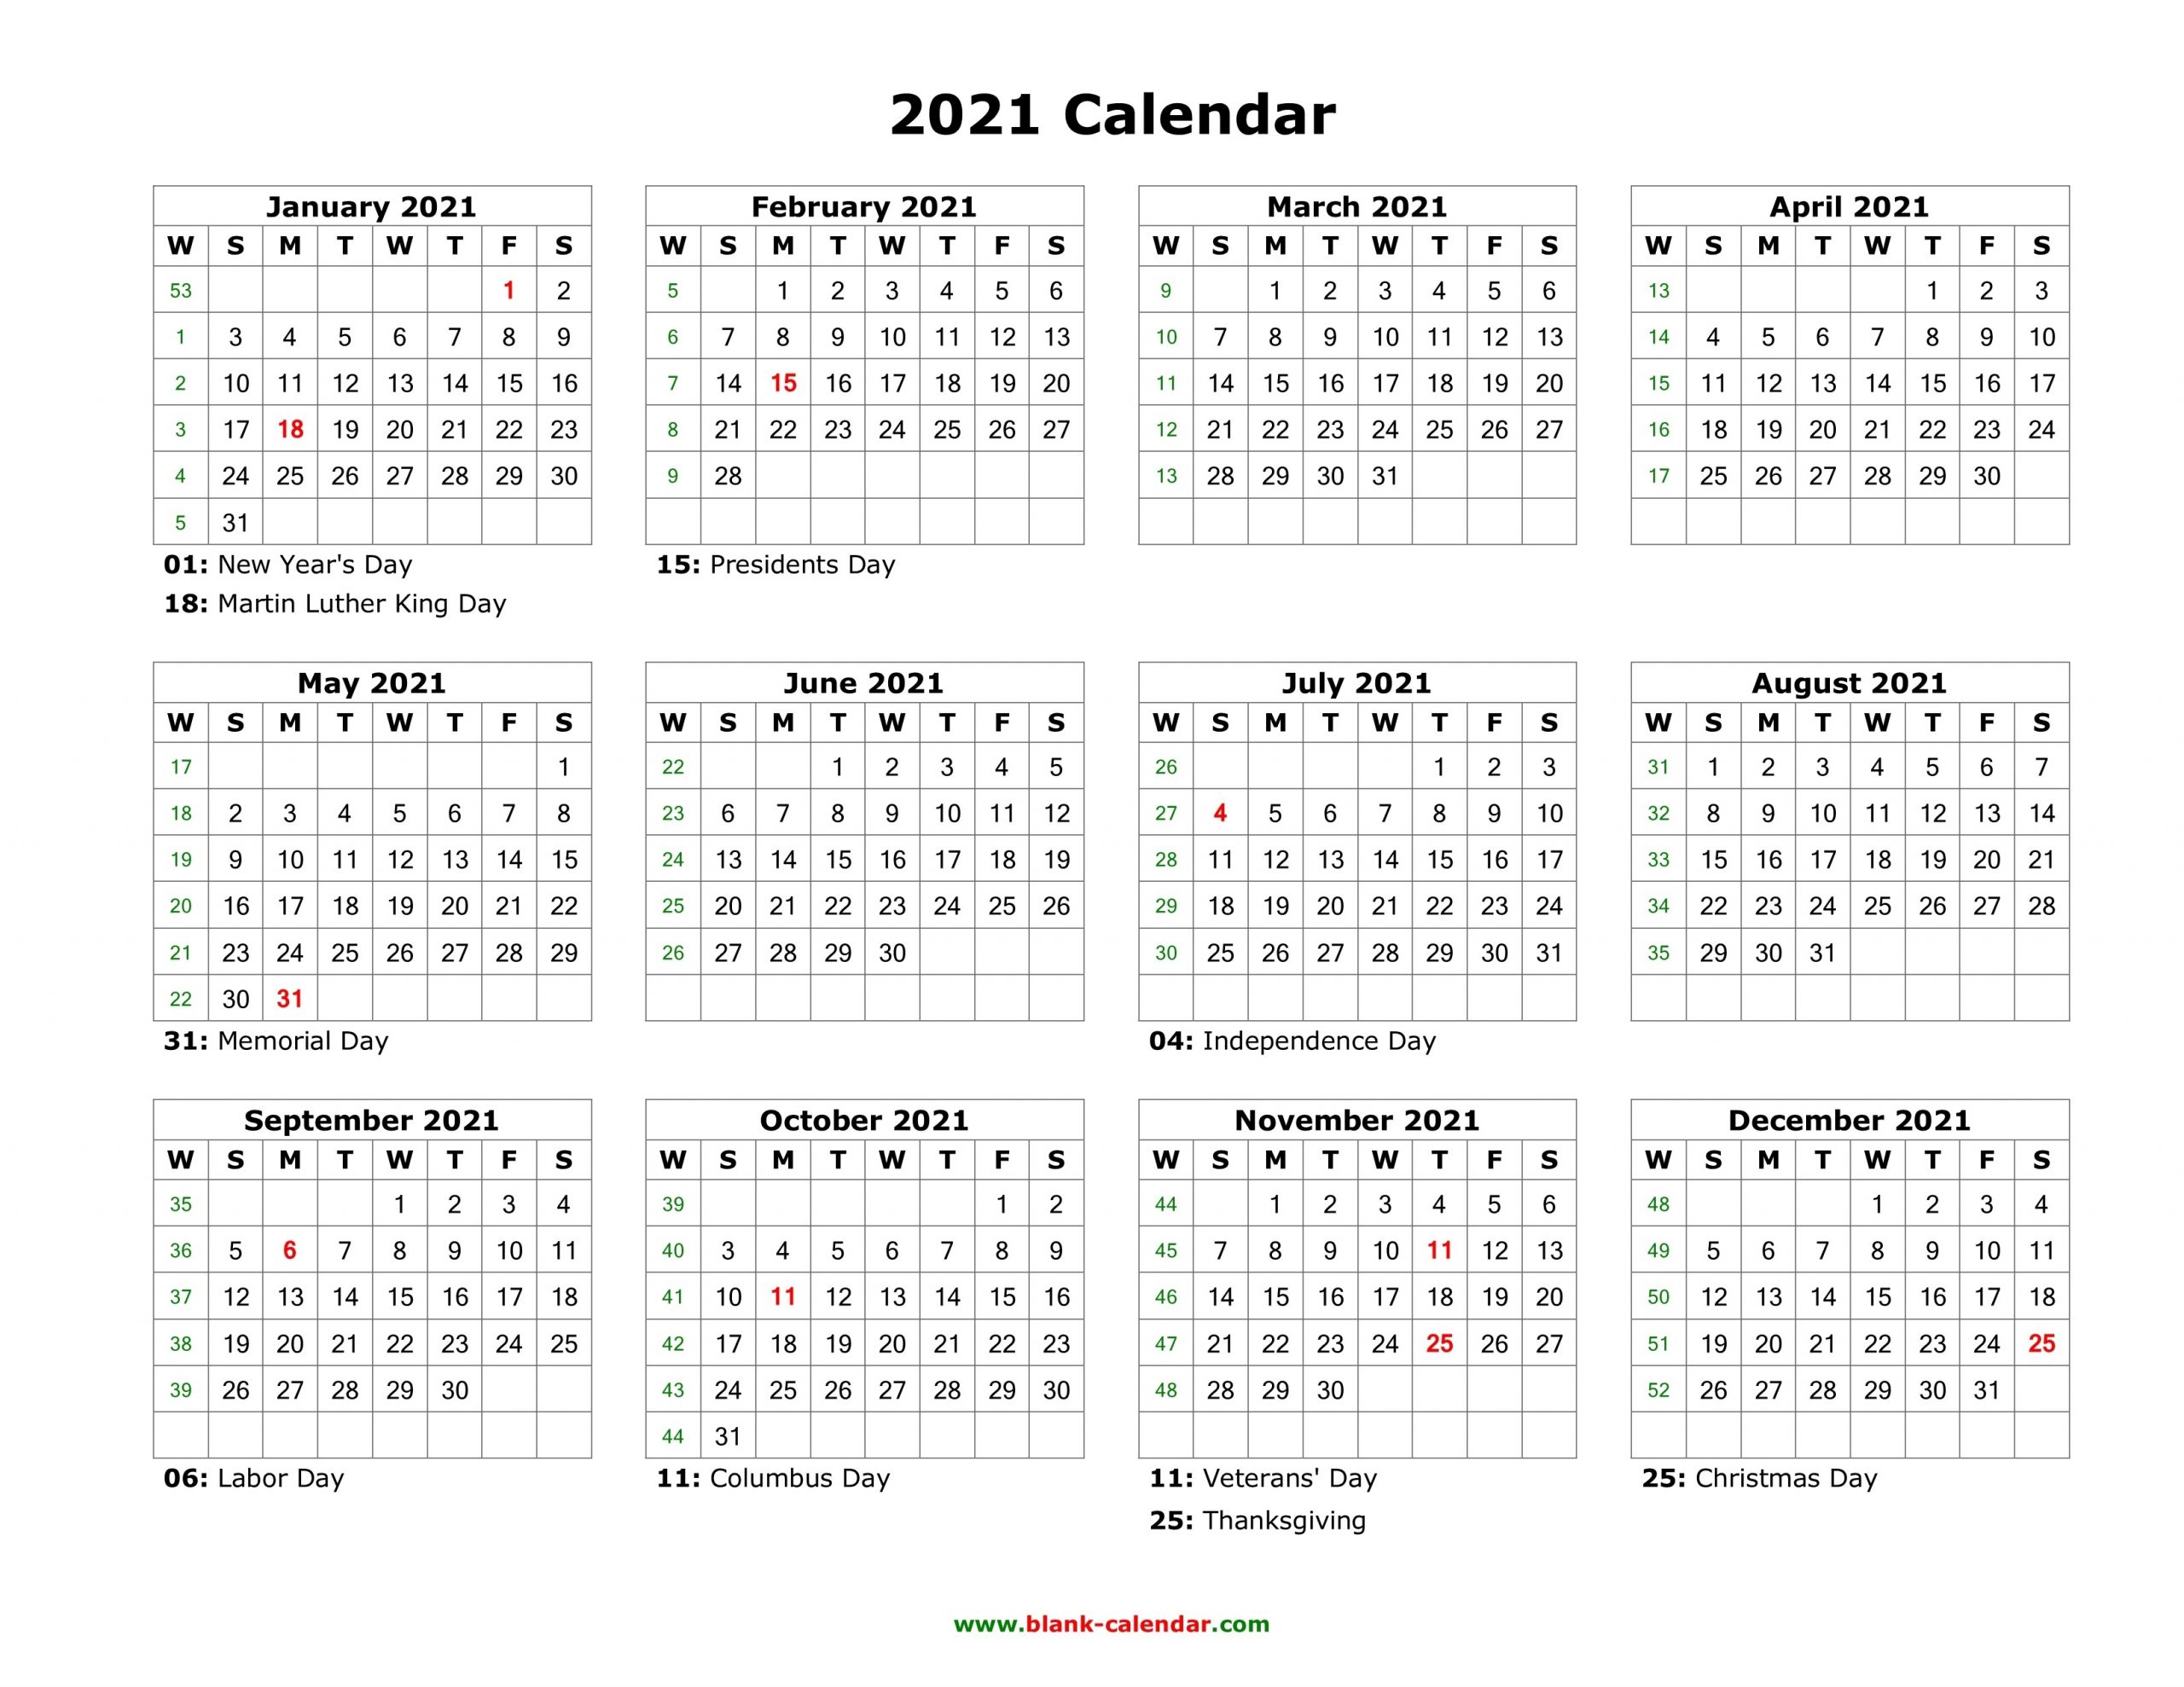 Blank Calendar 2021 | Free Download Calendar Templates-Calendar 2021 Template Free Word